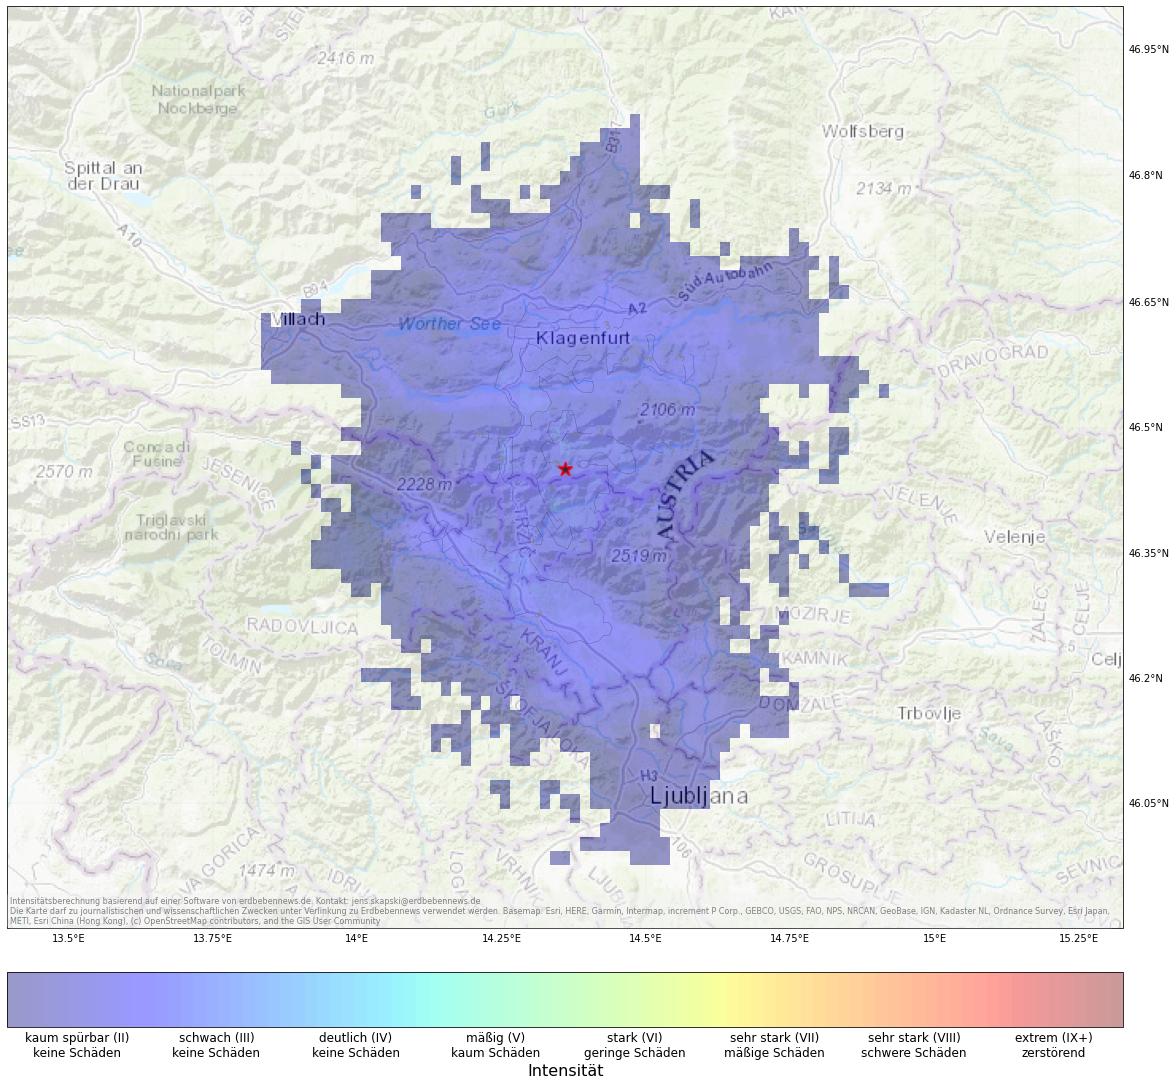 Berechnete Intensität (ShakeMap) des Erdbebens der Stärke 3.4 am 9. Januar, 01:02 Uhr in Slowenien